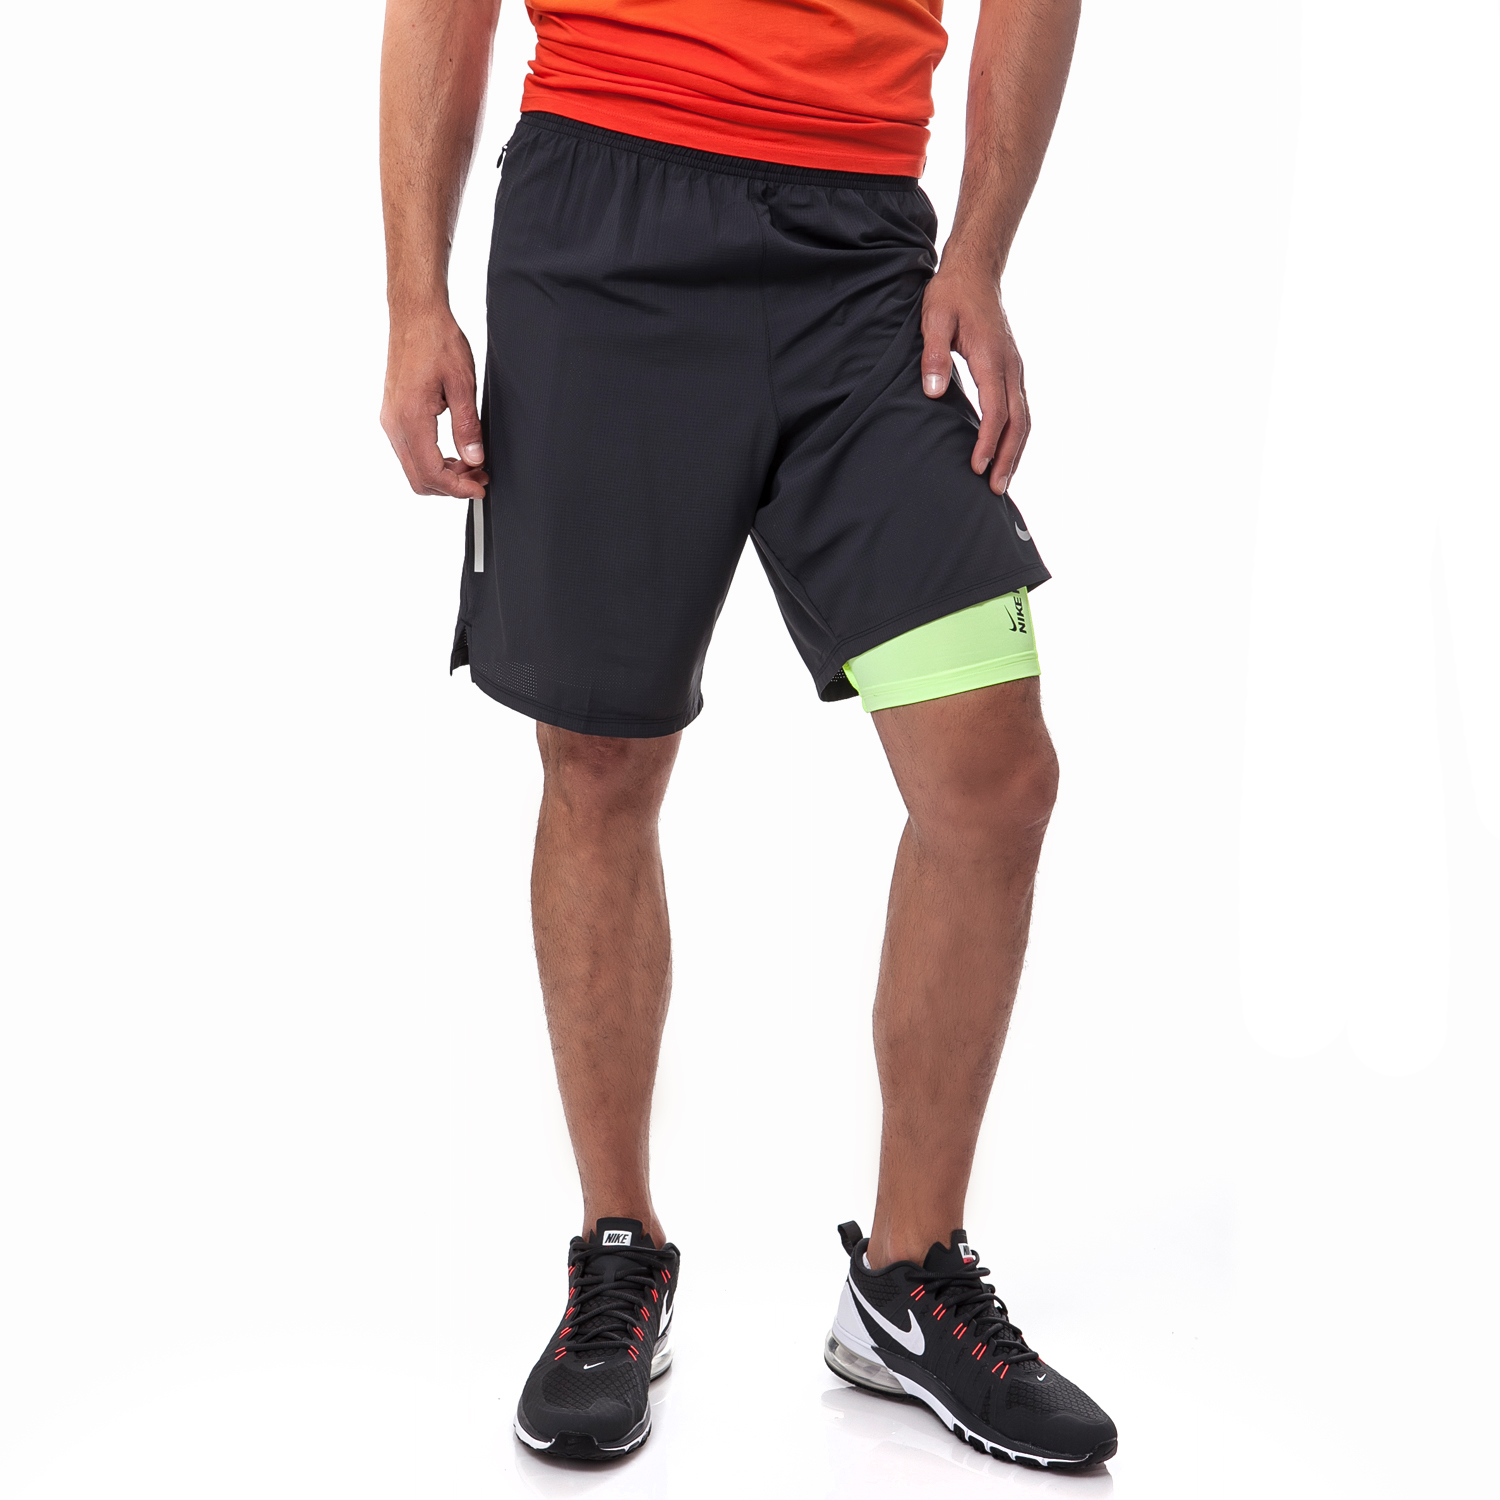 NIKE - Ανδρικό σορτς Nike 9" PHENOM μαύρο Ανδρικά/Ρούχα/Σορτς-Βερμούδες/Αθλητικά